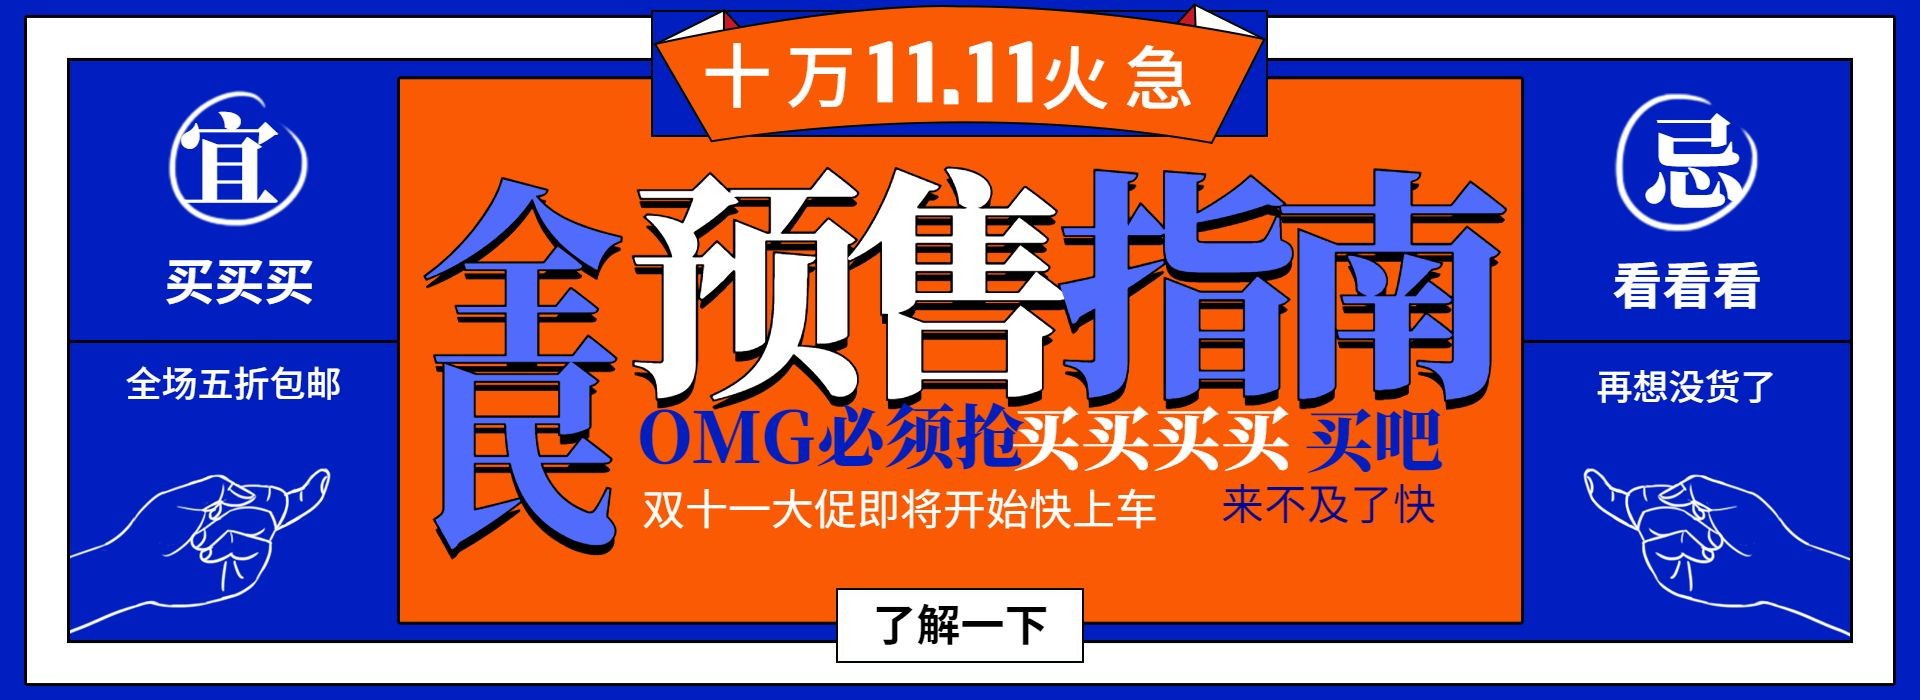 双十一预售指南公告创意电商海报banner